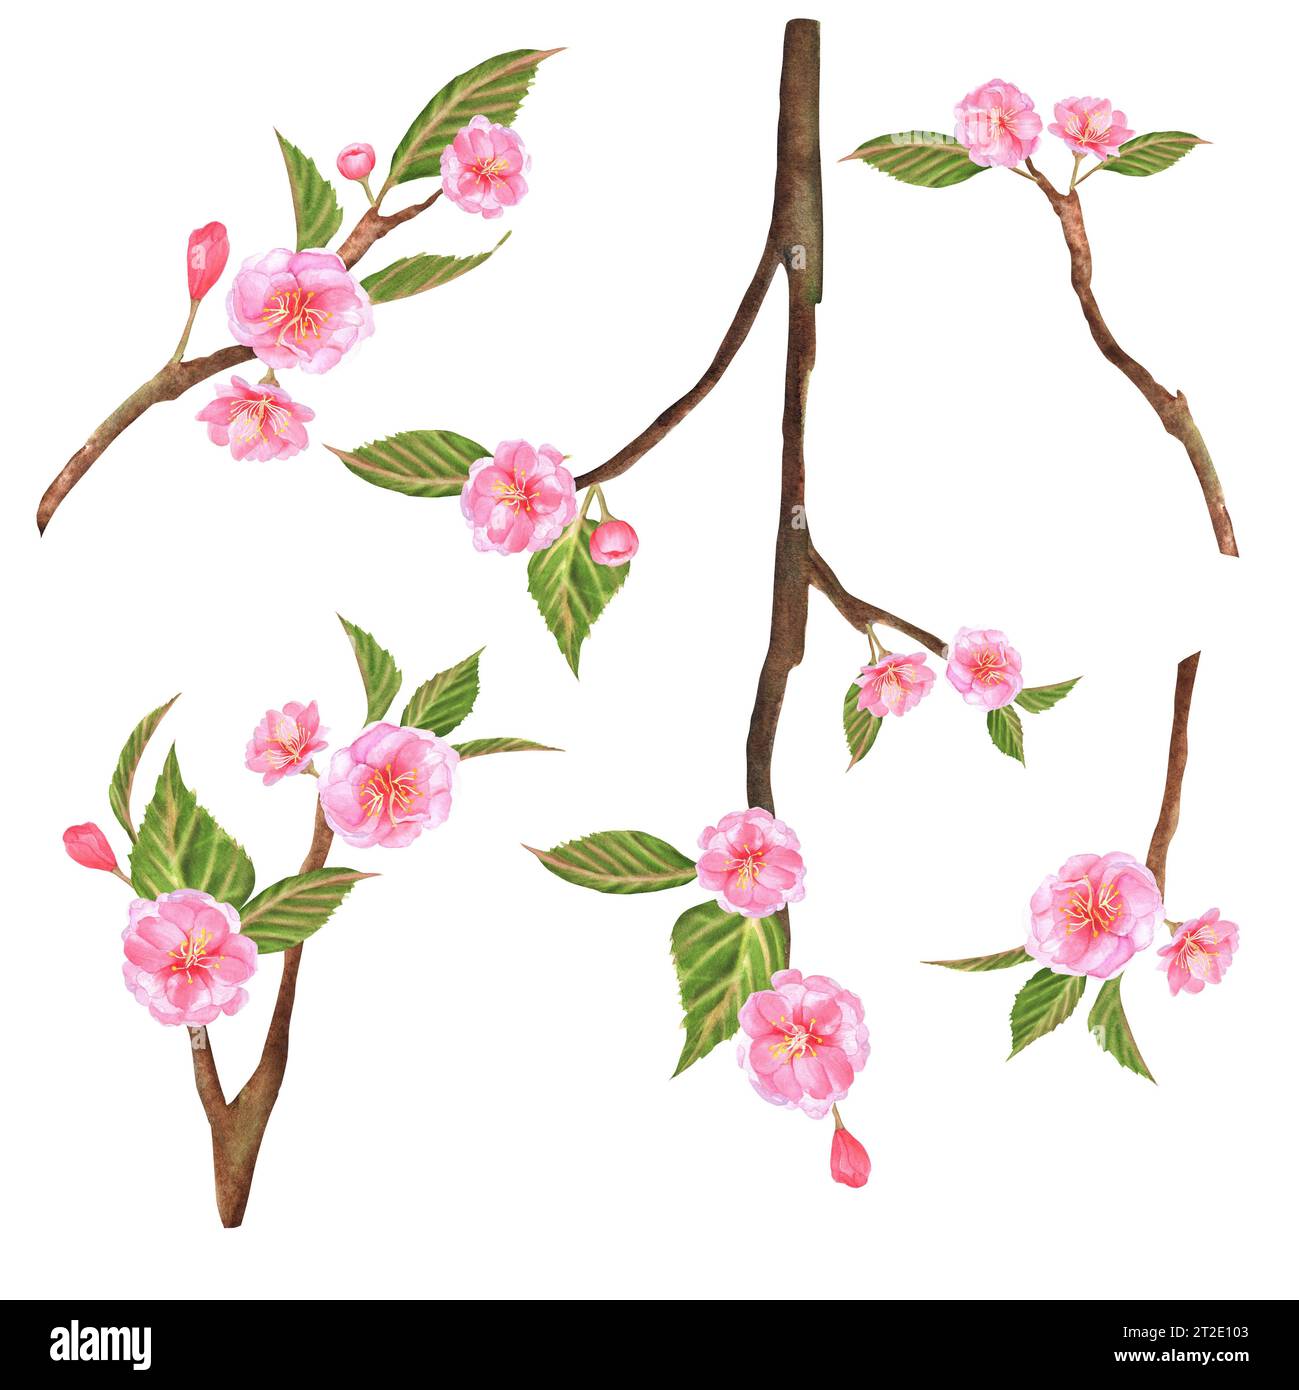 Illustrazioni ad acquerello disegnate a mano. Rami Sakura con fiori rosa e foglie verdi. Foto Stock